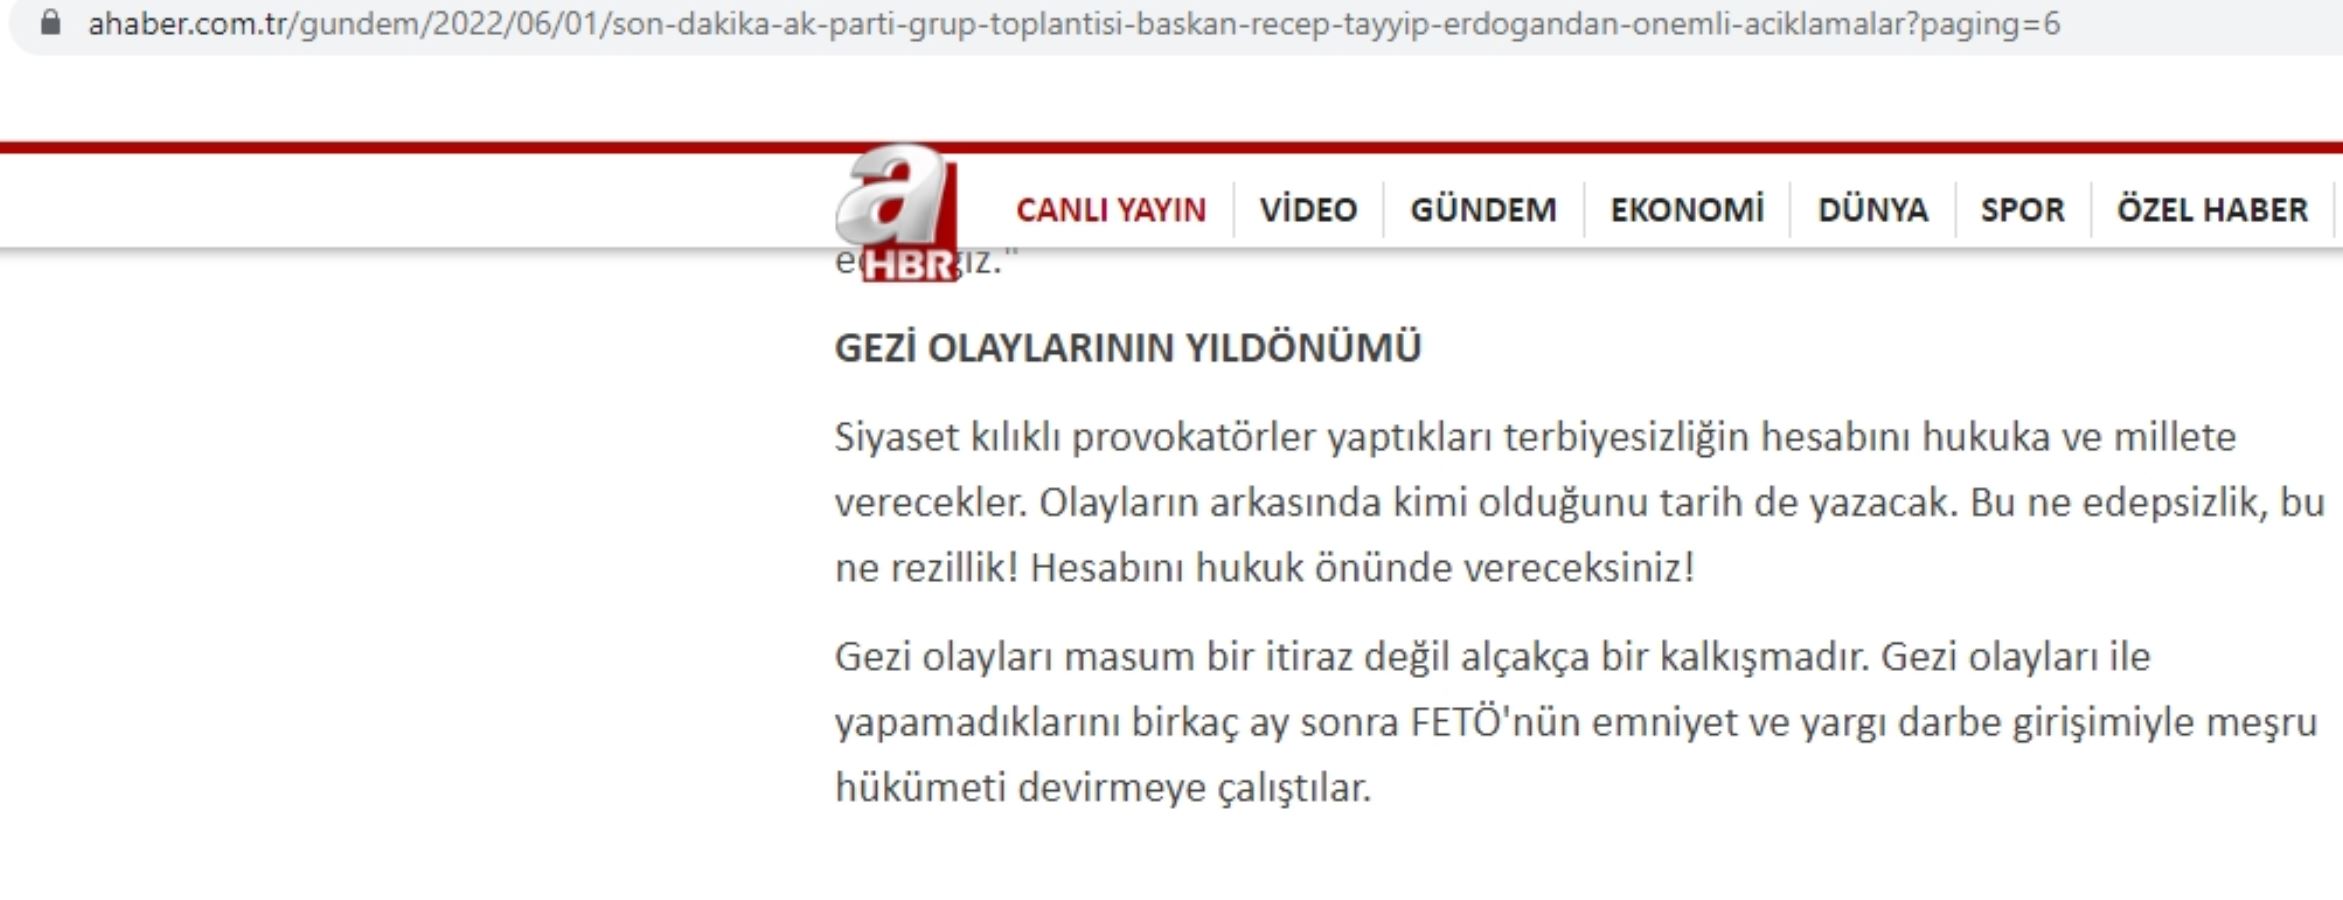 Cumhurbaşkanı Erdoğan Gezi eylemcilerine 'sürtük' dedi, yandaş medya sansürledi